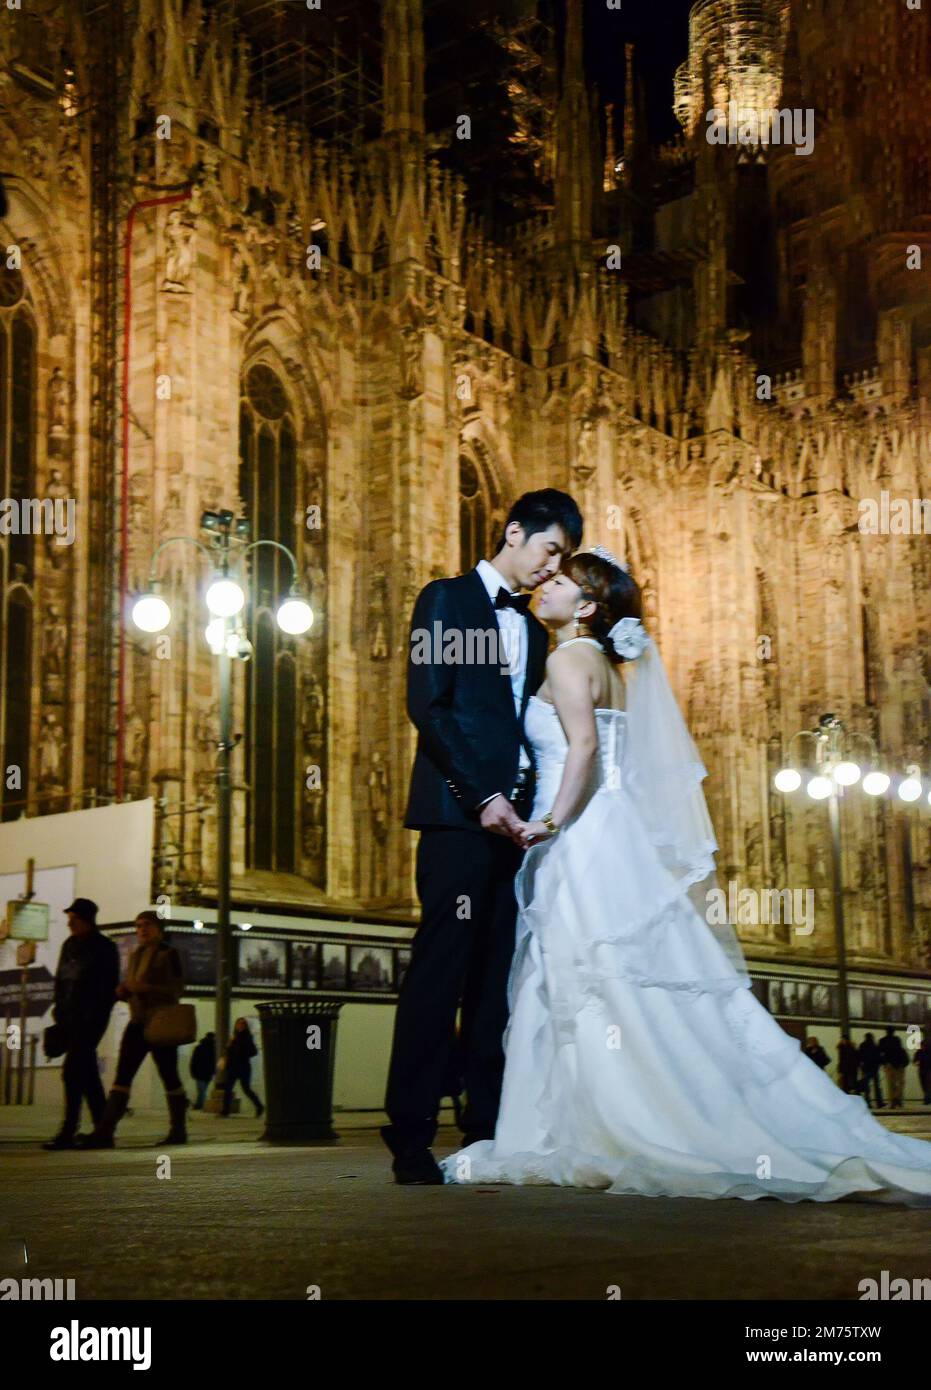 02-22-2014 Mailand , Italien. Die allgegenwärtigen chinesischen Hochzeitspaare dieses Mal in Mailand mit der Mailänder Kathedrale im Hintergrund Stockfoto